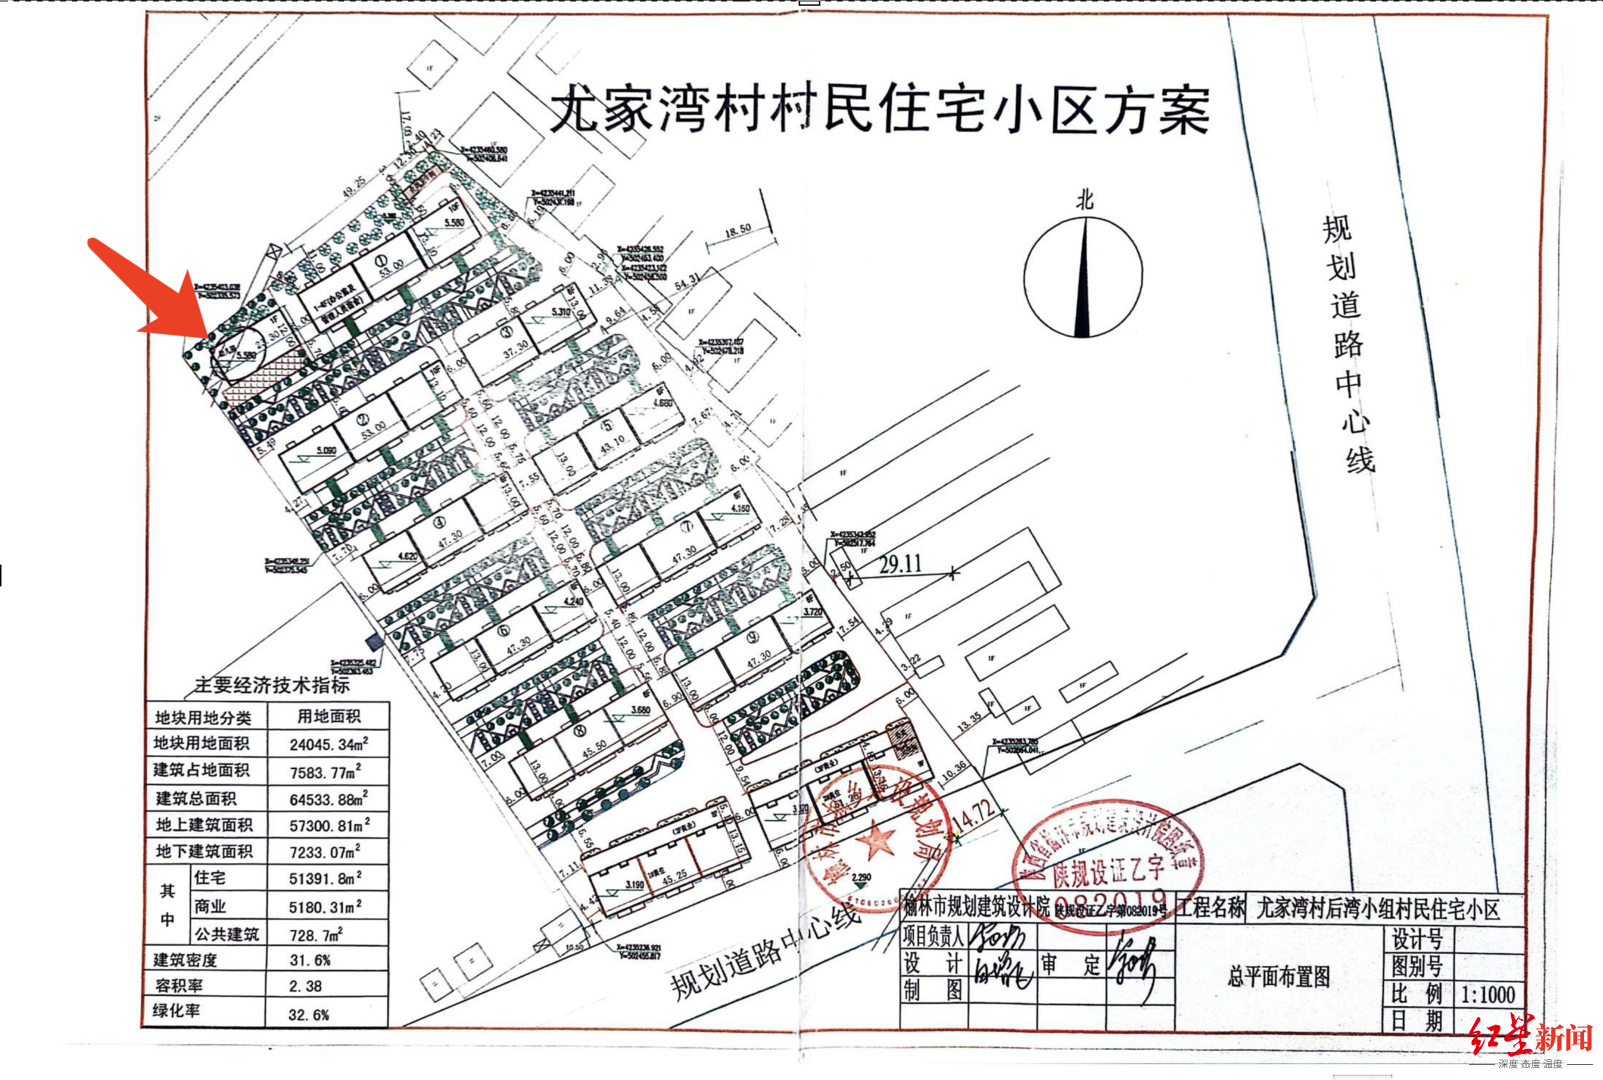 ▲小区建设规划图纸，左上角为幼儿园原规划位置。